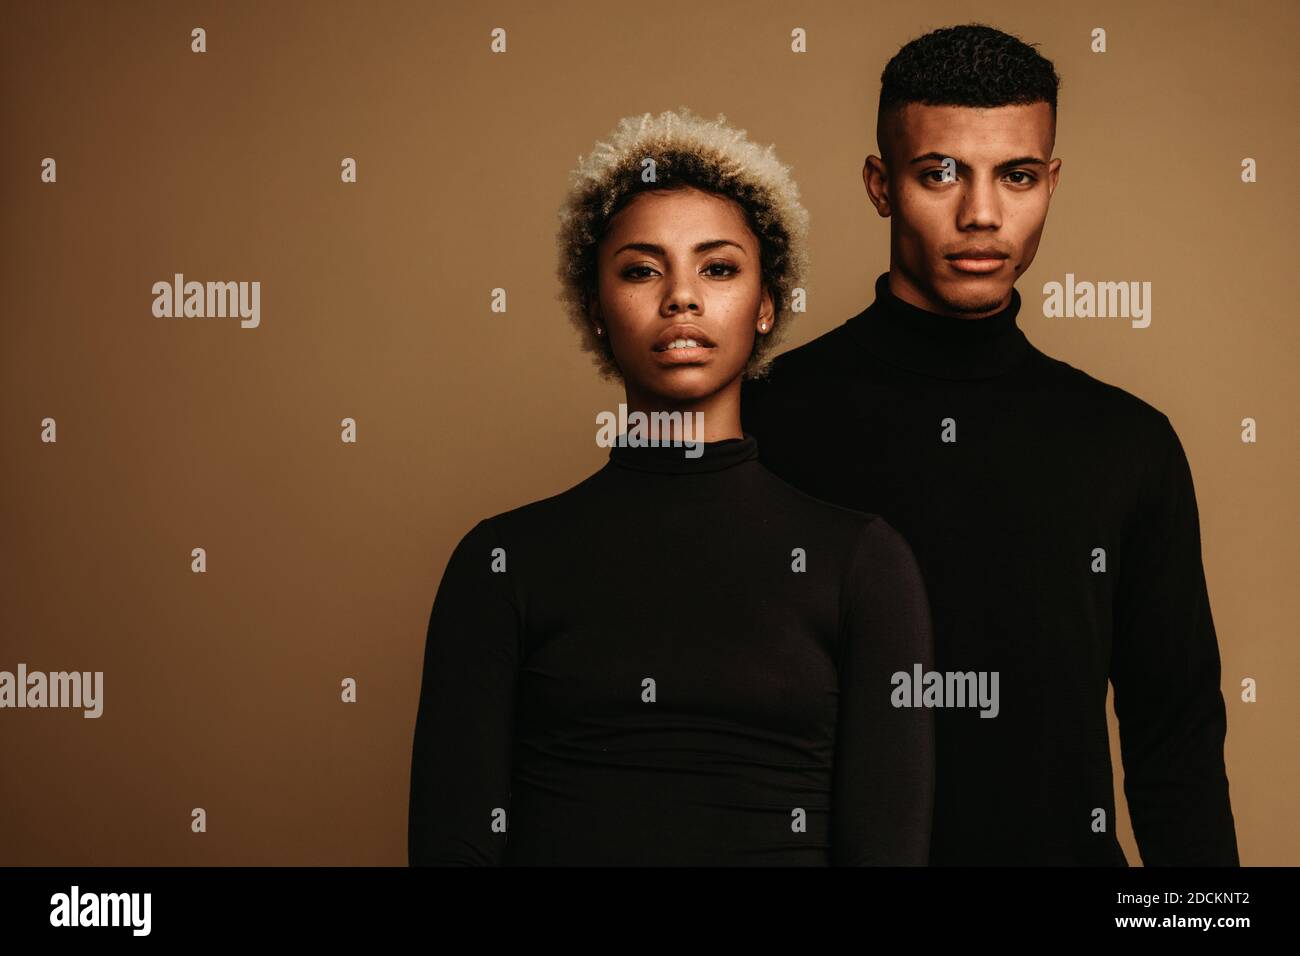 Couple sur fond marron dans des vêtements noirs. Portrait de l'homme et de la femme afro-américains. Banque D'Images